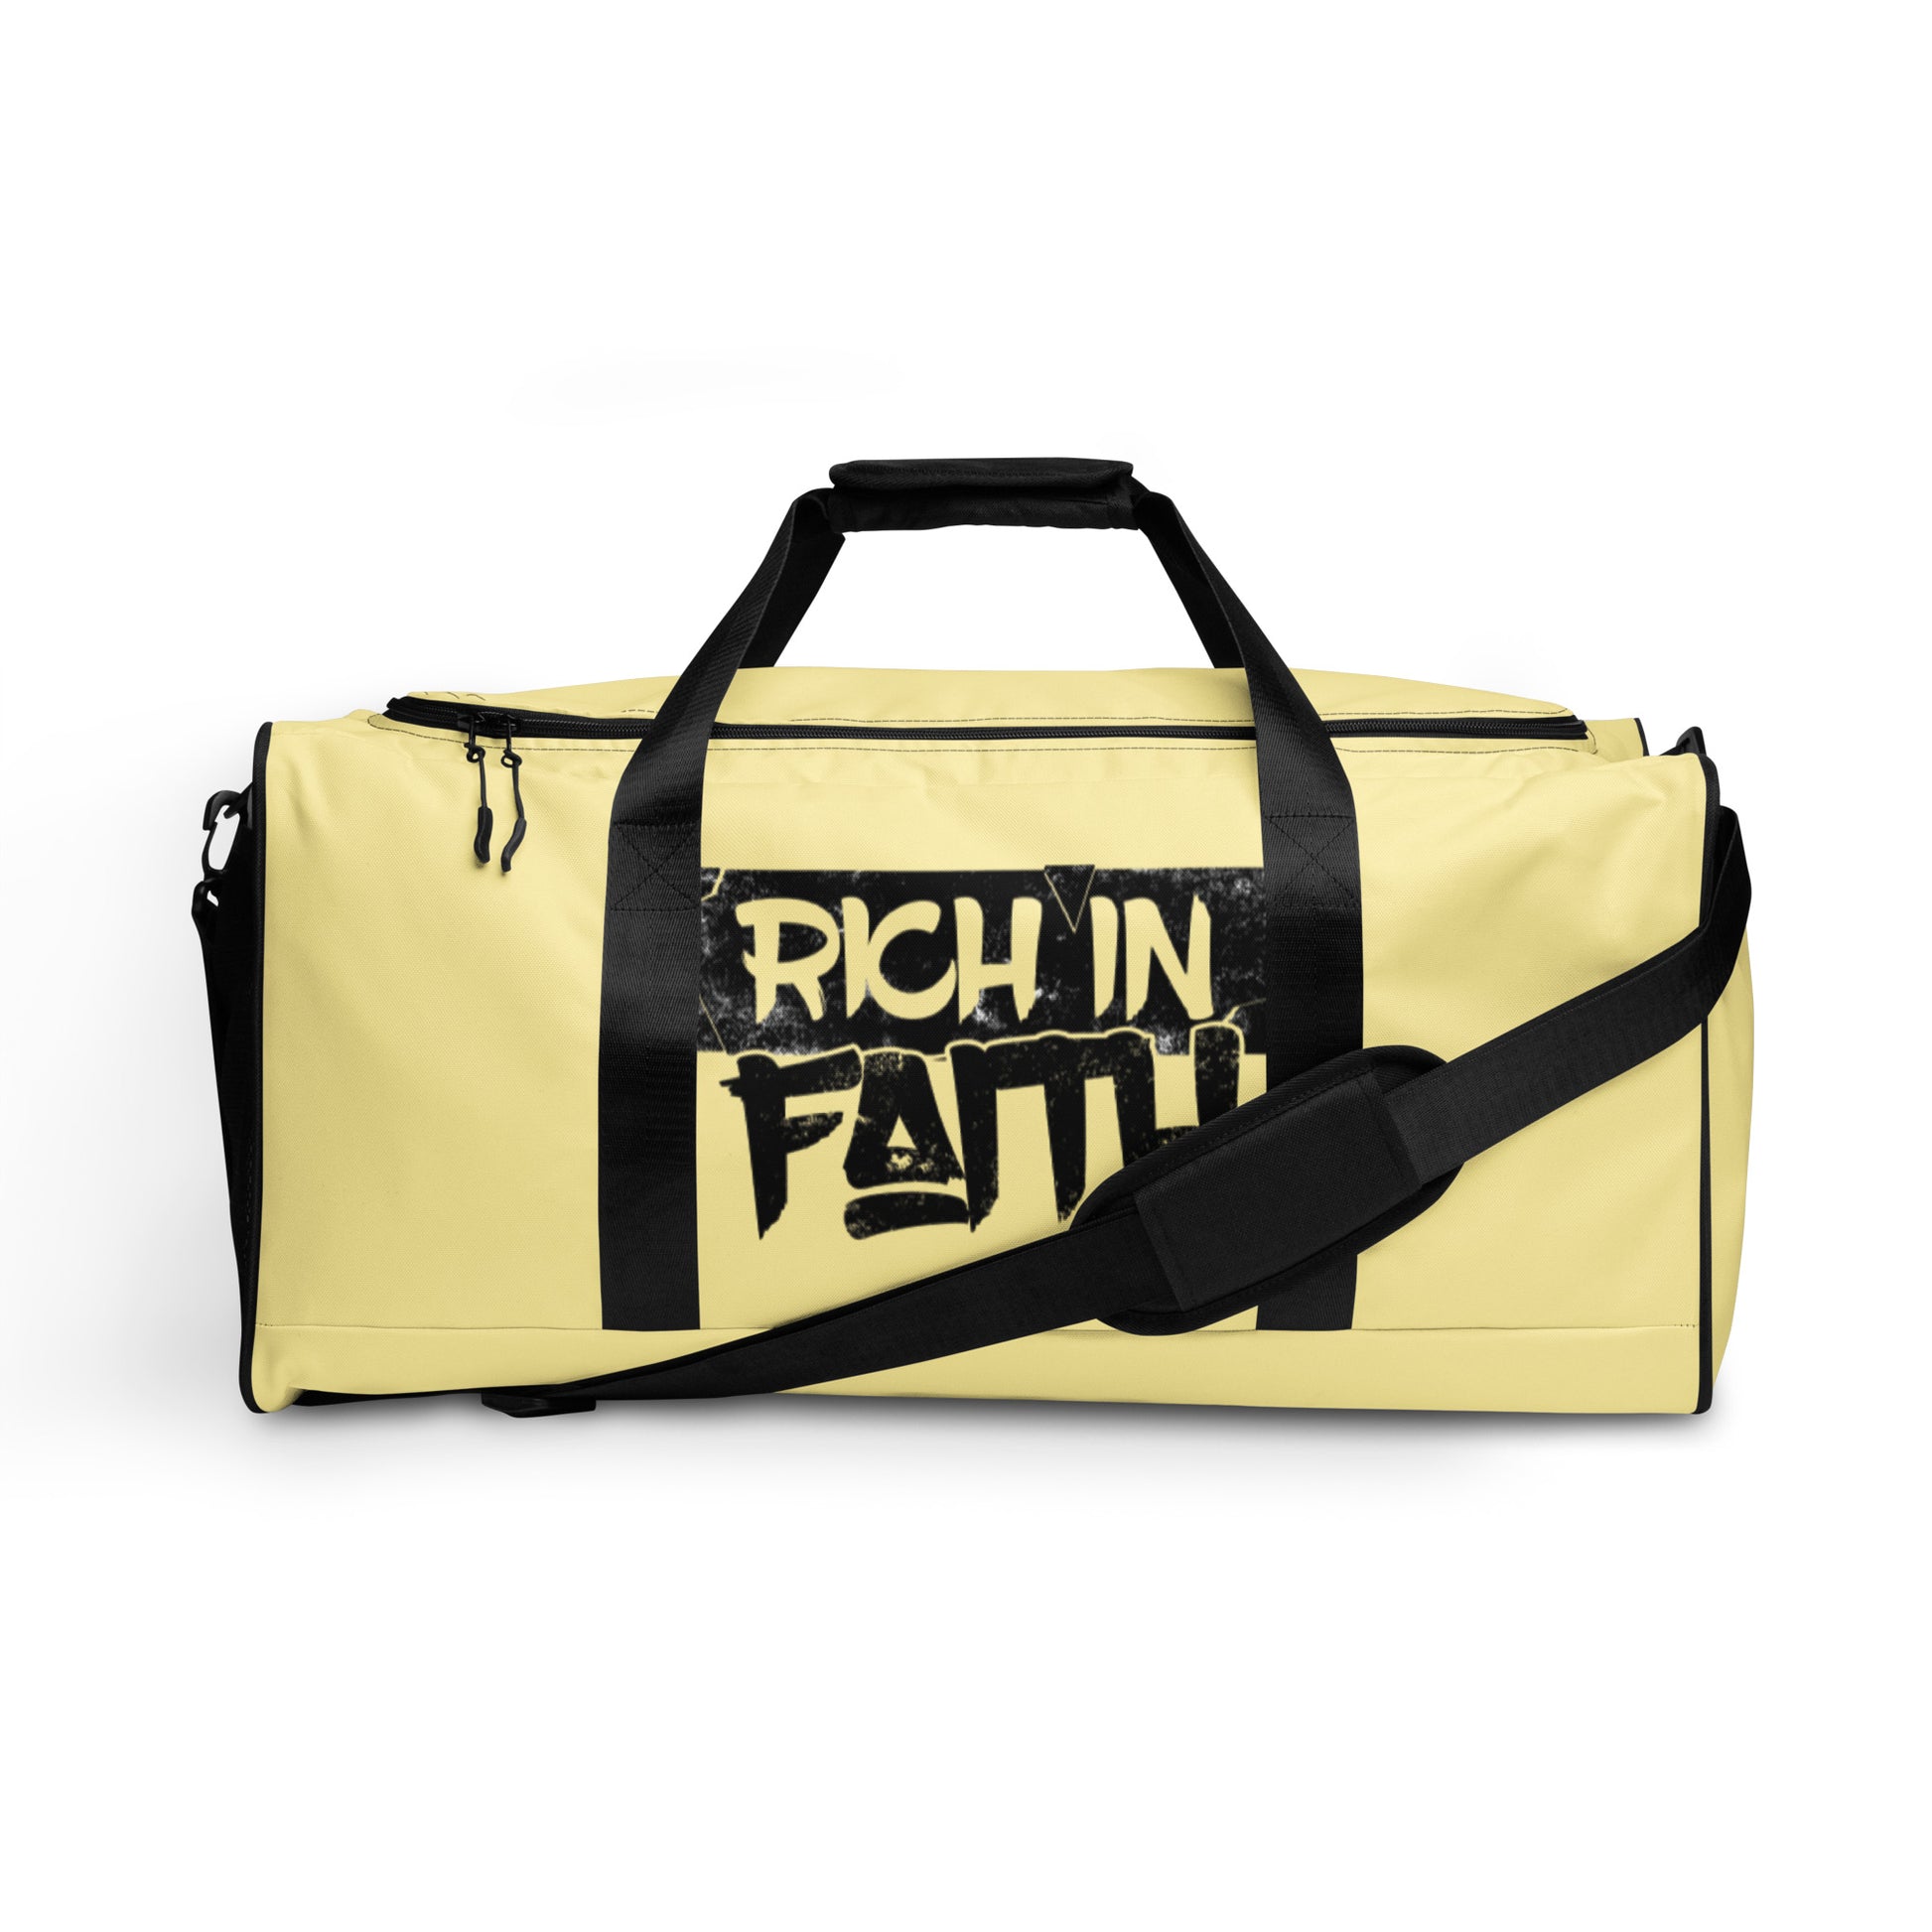 Rich in Faith Duffle bag - IGOTUS